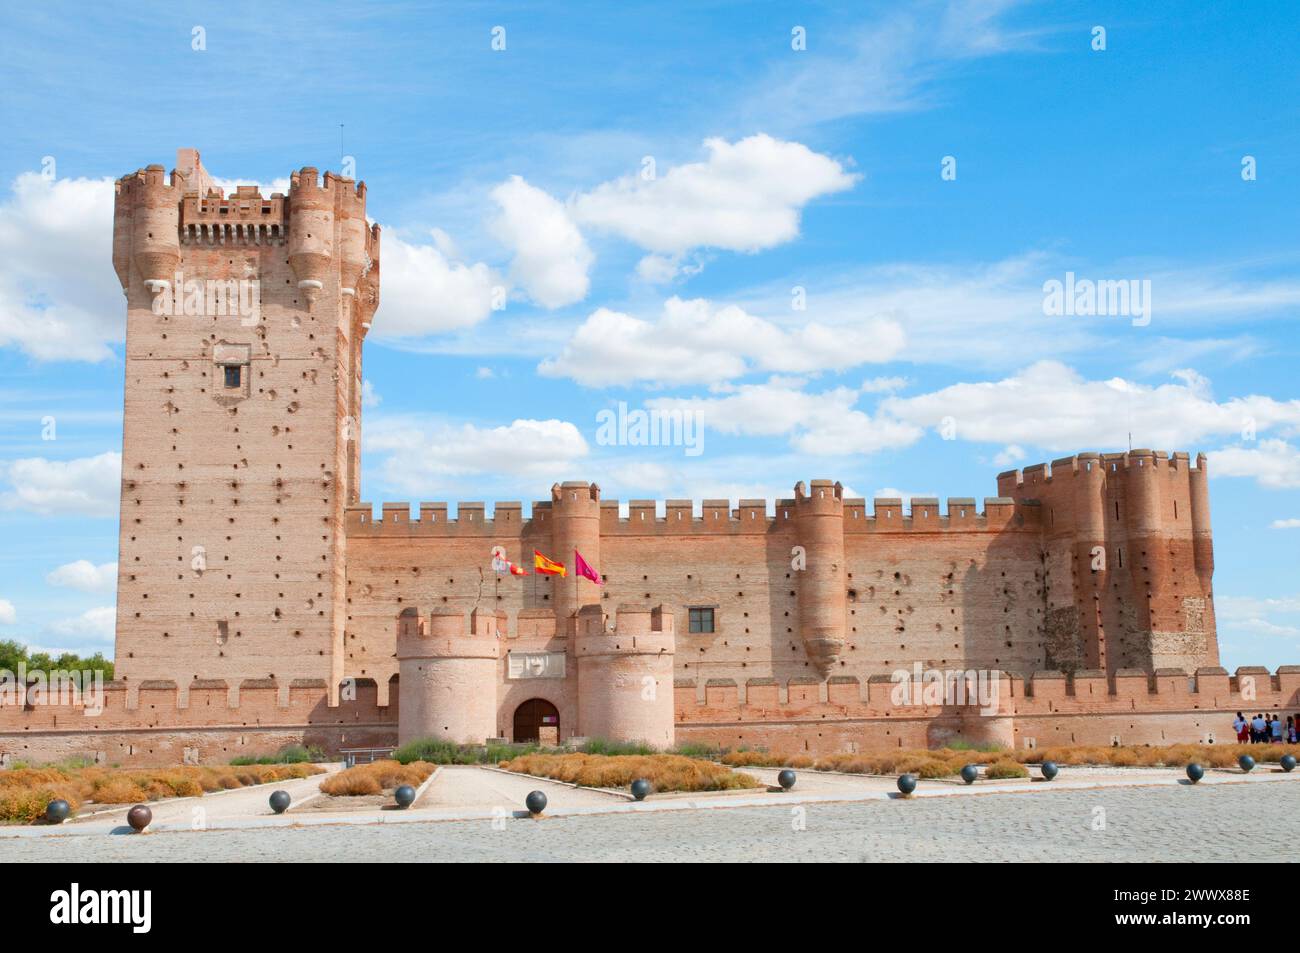 La Mota castle. Medina del Campo, Valladolid province, Castilla Leon, Spain. Stock Photo